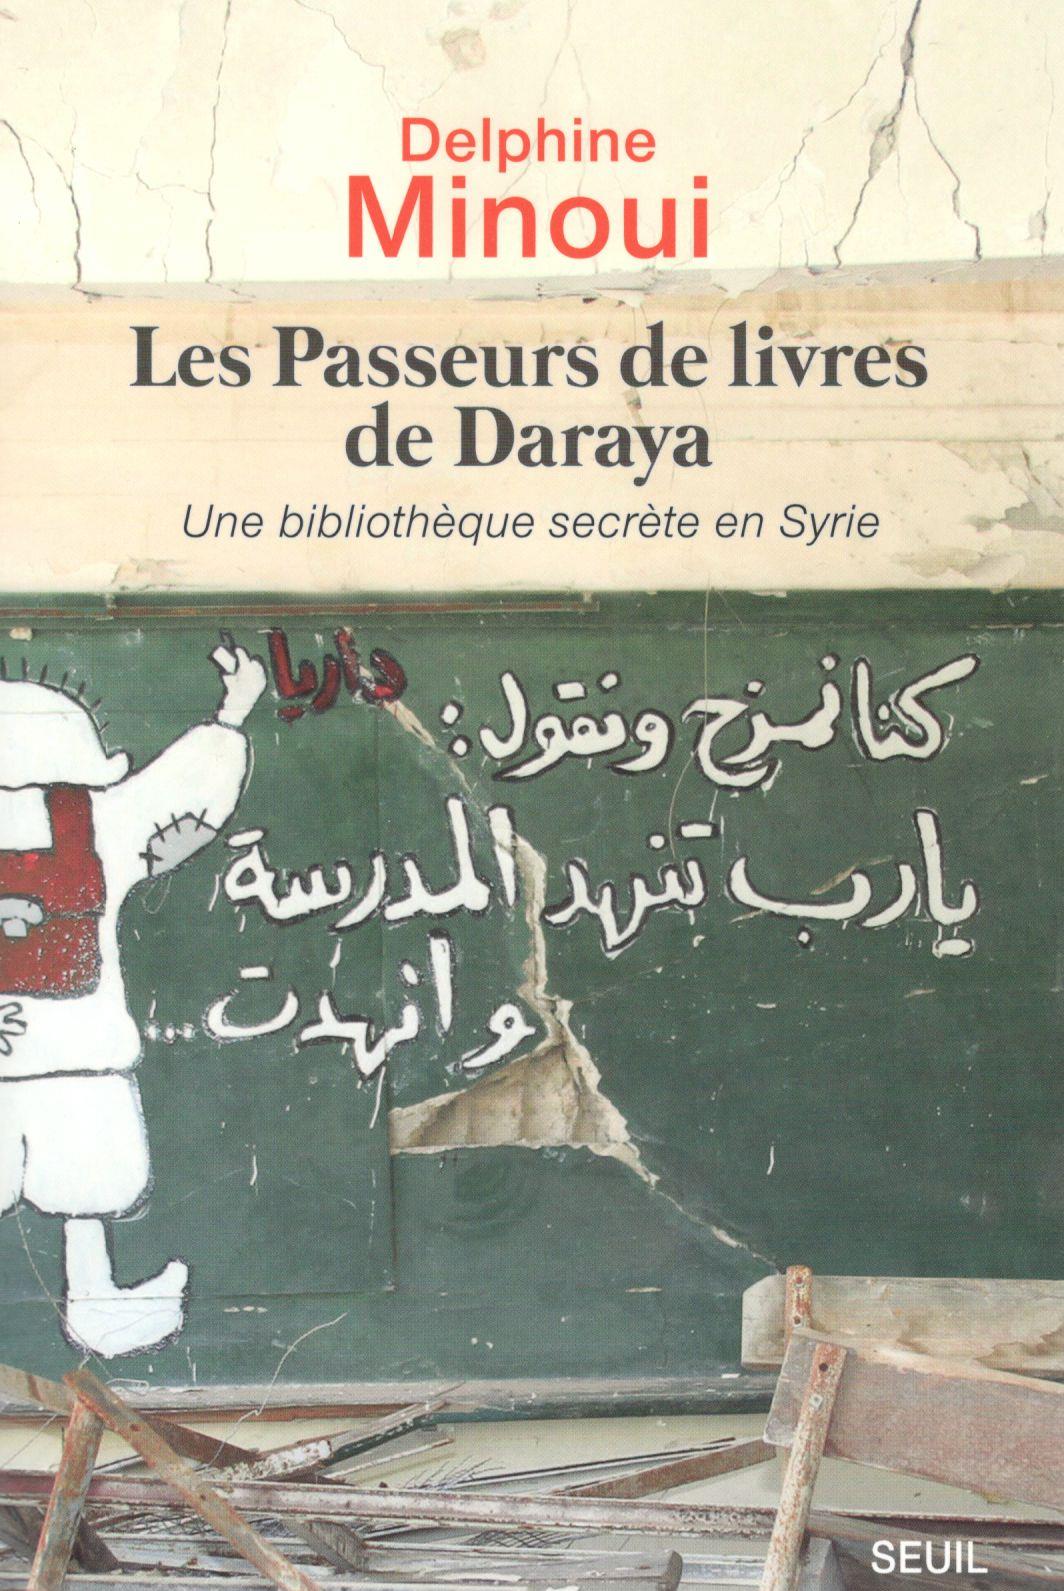 Les passeurs de livres de Daraya